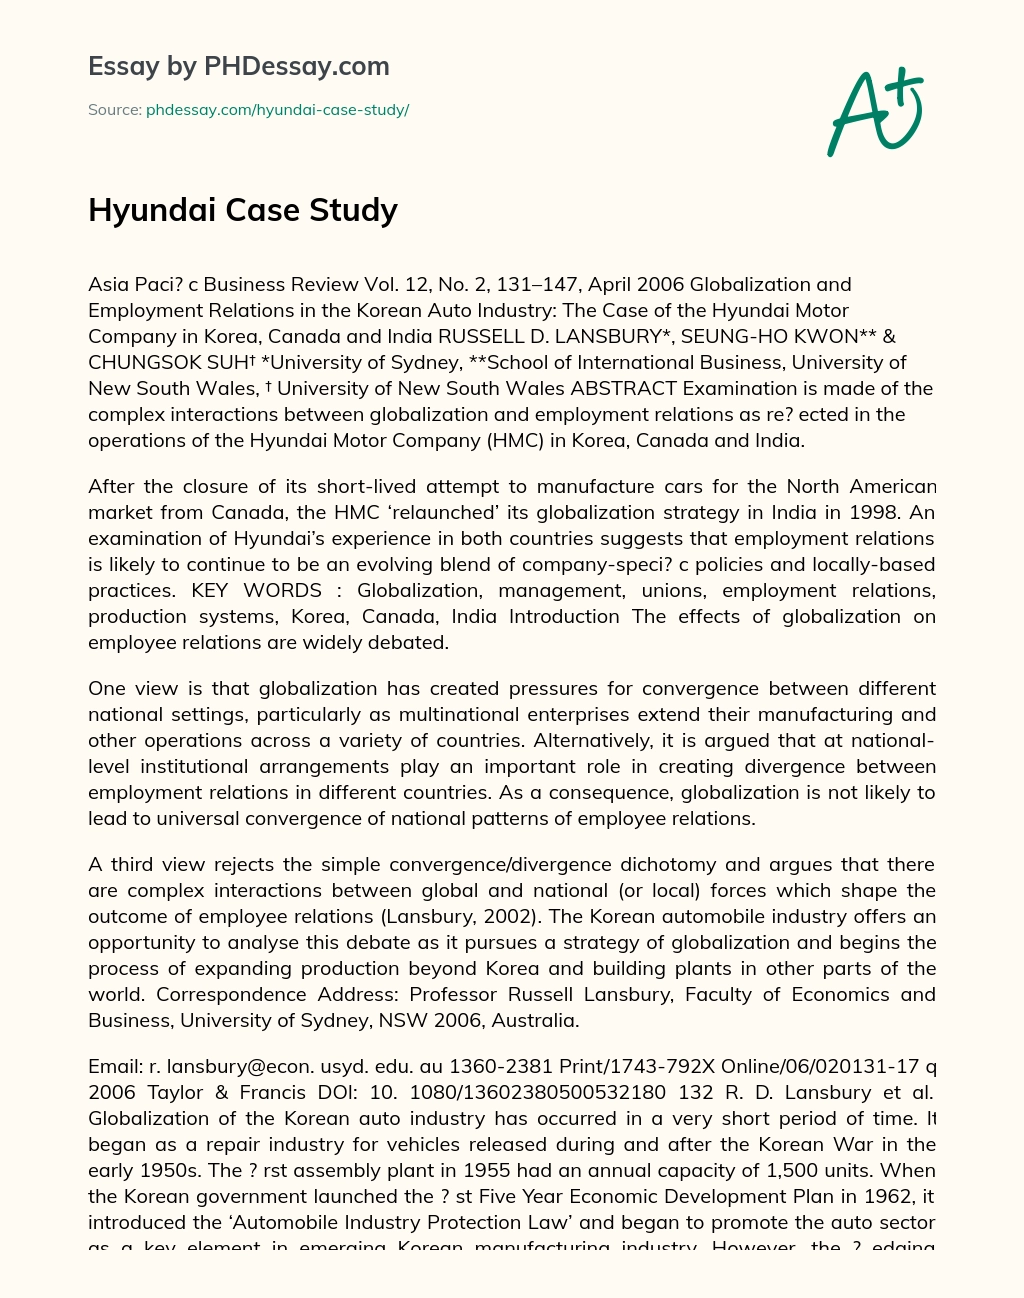 Hyundai Case Study essay